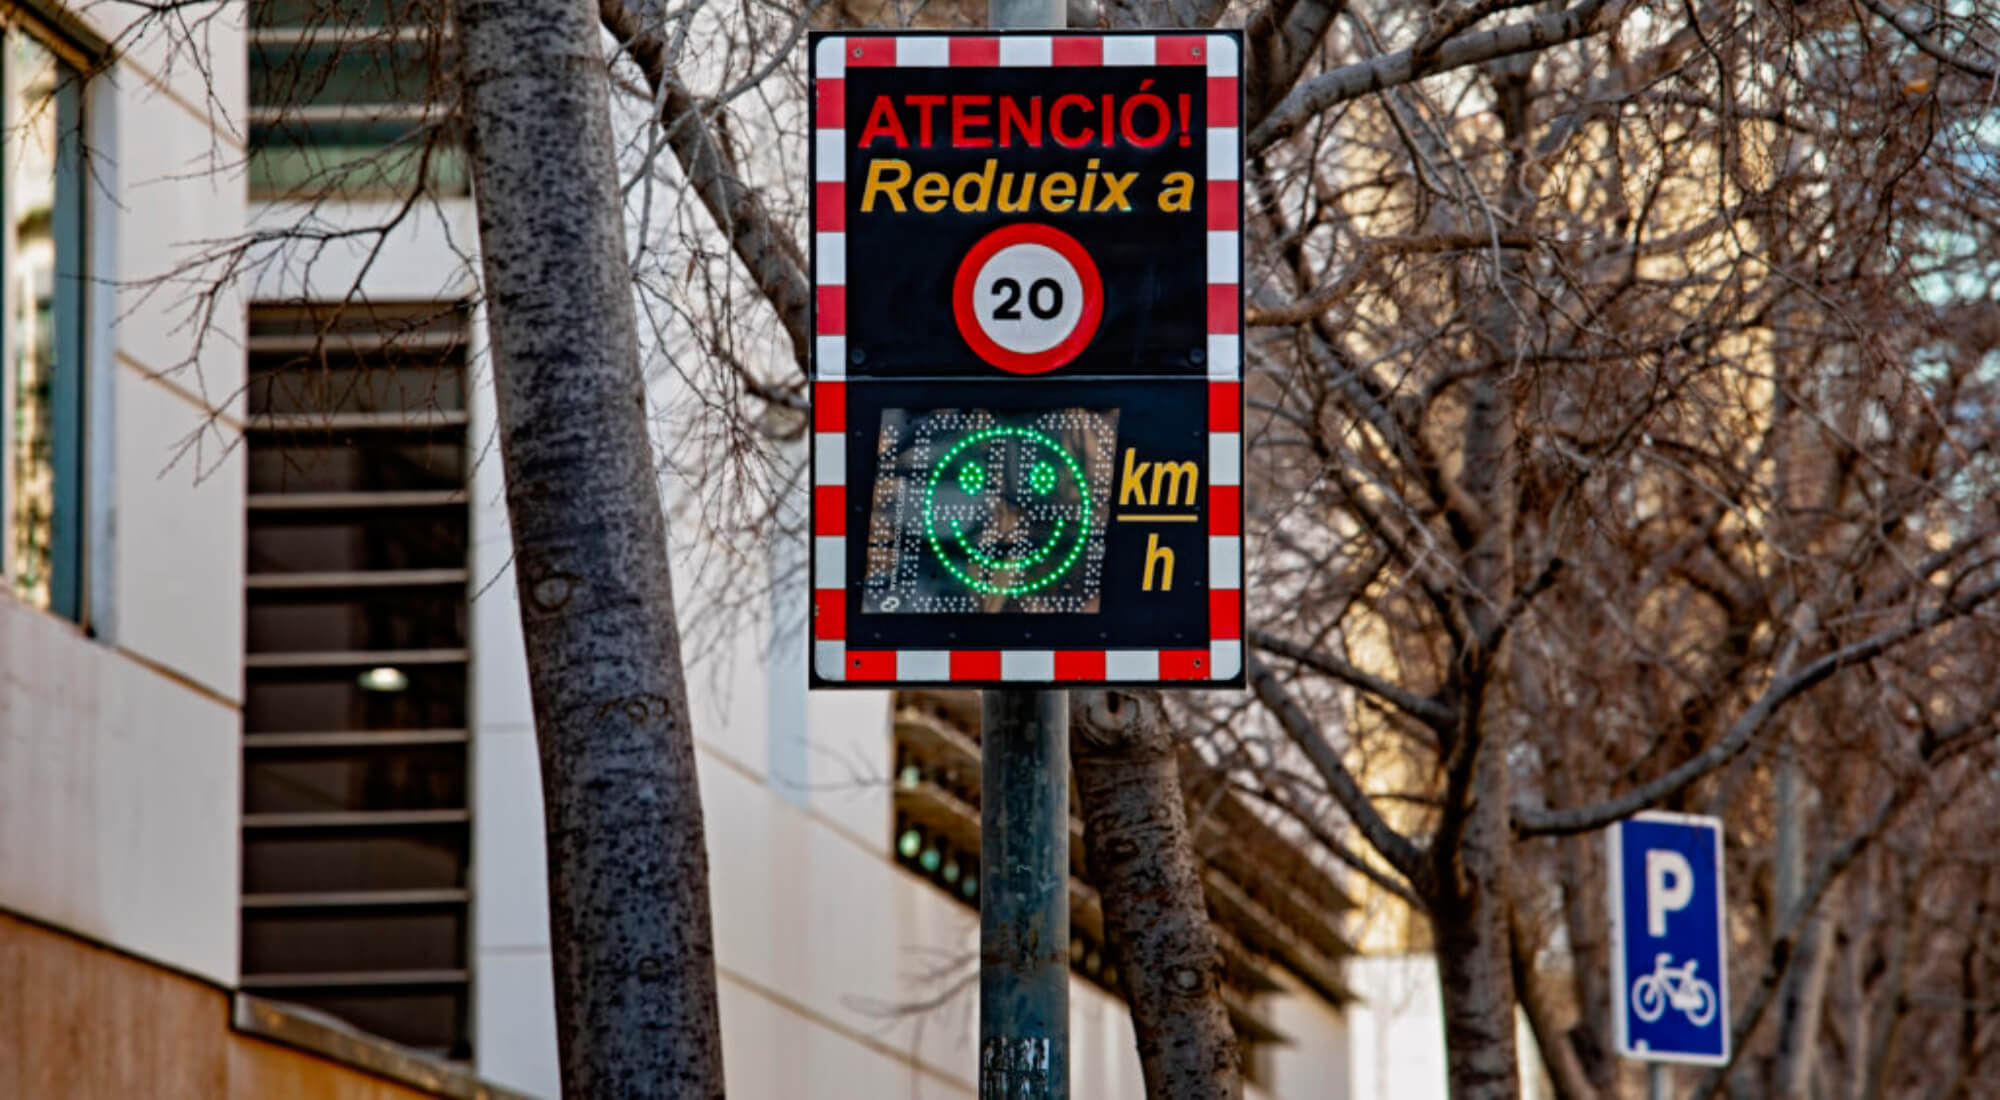 Por inesperado que parezca, los radares también tienen vacaciones: al menos 12 de los que vigilan las calles de Barcelona. Durante el mes de agosto no sancionarán los excesos de velocidad, pero ¿qué pasará en septiembre? Volverán a la acción y lo harán con refuerzos. Fue en enero cuando Barcelona estrenó 17 nuevos radares de punto en sus calles. De ellos, cinco fueron ubicados en zonas de alta siniestralidad y los otros 12, en entornos escolares. Zonas que forman parte de los 33 tramos de la red básica, donde la velocidad máxima es de 30 km/h. 
			<div class="articulos-relacionados derecha clear">

				<h2 class="articulos-relacionados__titulo">Más información</h2>

				<ul>
					
													<li>
								<a href="https://motor.elpais.com/actualidad/la-multa-de-velocidad-mas-alta-jamas-registrada-en-el-mundo/"
								   title="La multa de velocidad más alta jamás registrada en el mundo">
									<img src="https://motor.elpais.com/wp-content/uploads/2023/04/radar-01-150x90.jpg" loading="lazy" alt="La multa de velocidad más alta jamás registrada en el mundo" width="150" height="90" />La multa de velocidad más alta jamás registrada en el mundo								</a>
							</li>

							
													<li>
								<a href="https://motor.elpais.com/conducir/ni-arte-ni-vandalismo-las-nuevas-lineas-que-llegan-para-evitar-excesos-de-velocidad/"
								   title="Ni arte, ni vandalismo: nuevas líneas en el asfalto para evitar excesos de velocidad">
									<img src="https://motor.elpais.com/wp-content/uploads/2019/04/senal-de-velocidad70-150x90.jpg" loading="lazy" alt="Ni arte, ni vandalismo: nuevas líneas en el asfalto para evitar excesos de velocidad" width="150" height="90" />Ni arte, ni vandalismo: nuevas líneas en el asfalto para evitar excesos de velocidad								</a>
							</li>

							
				</ul>

			</div><!-- / .articulos-relacionados -->

			 H2 Los conductores de la Ciudad Condal no tardaron en comprobar que esos 12 cinemómetros estaban activos las 24 horas del día y todos los días de la semana. Esto llevó a varios grupos políticos a solicitar al ayuntamiento que apagaran los radares fuera del horario lectivo, los fines de semana y los meses en los que no hay clase. Aseguraban que las señales instaladas ya eran suficientes para generar un efecto disuasorio en los conductores y que su permanente actividad tenía afán recaudatorio. El Ayuntamiento de Barcelona se negó porque consideraron que la medida sería contraproducente para la seguridad de los eternos escolares. FOTO Radares que no multan en agosto Ahora, tras las elecciones de finales de mayo, las cosas han cambiado. Jaume Collboni, el nuevo alcalde de la Ciudad Condal, ha dado luz verde a aquella petición y, desde el 1 de agosto, esos 12 radares de Barcelona dejarán de multar. No para siempre: únicamente durante el citado mes y solamente esos dispositivos, que están ubicados en los entornos escolares. Zonas en las que, tal y como establecen las nuevas señales, el límite de velocidad pasa de 30 a 50 km/h. FOTO ¿Y en septiembre? En septiembre comenzará un nuevo curso escolar y con él, se recuperará cierta normalidad en los entornos escolares. Los 12 radares ubicados en ellos volverán a funcionar, pero no siempre: sólo de 7:00 a 22:00 horas, cuando la velocidad máxima pasará a ser de 30 km/h, y de lunes a sábado. De 22:00 a 7:00 horas, los domingos y los días festivos será de 50 km/h. Radares pedagógicos para Barcelona Esta no será la única novedad en lo relacionado con el control de la velocidad en Barcelona. En otoño, llegarán 28 radares pedagógicos que fueron instalados el pasado mes de julio en calles cercanas, también, a entornos escolares. En estos tramos, la velocidad máxima será de 50 km/h durante el horario lectivo: eso sí, habrá tres puntos de 30 km/h. Los dispositivos no multarán, se limitarán a informar a los conductores de su velocidad usando sus paneles luminosos para concienciarles.